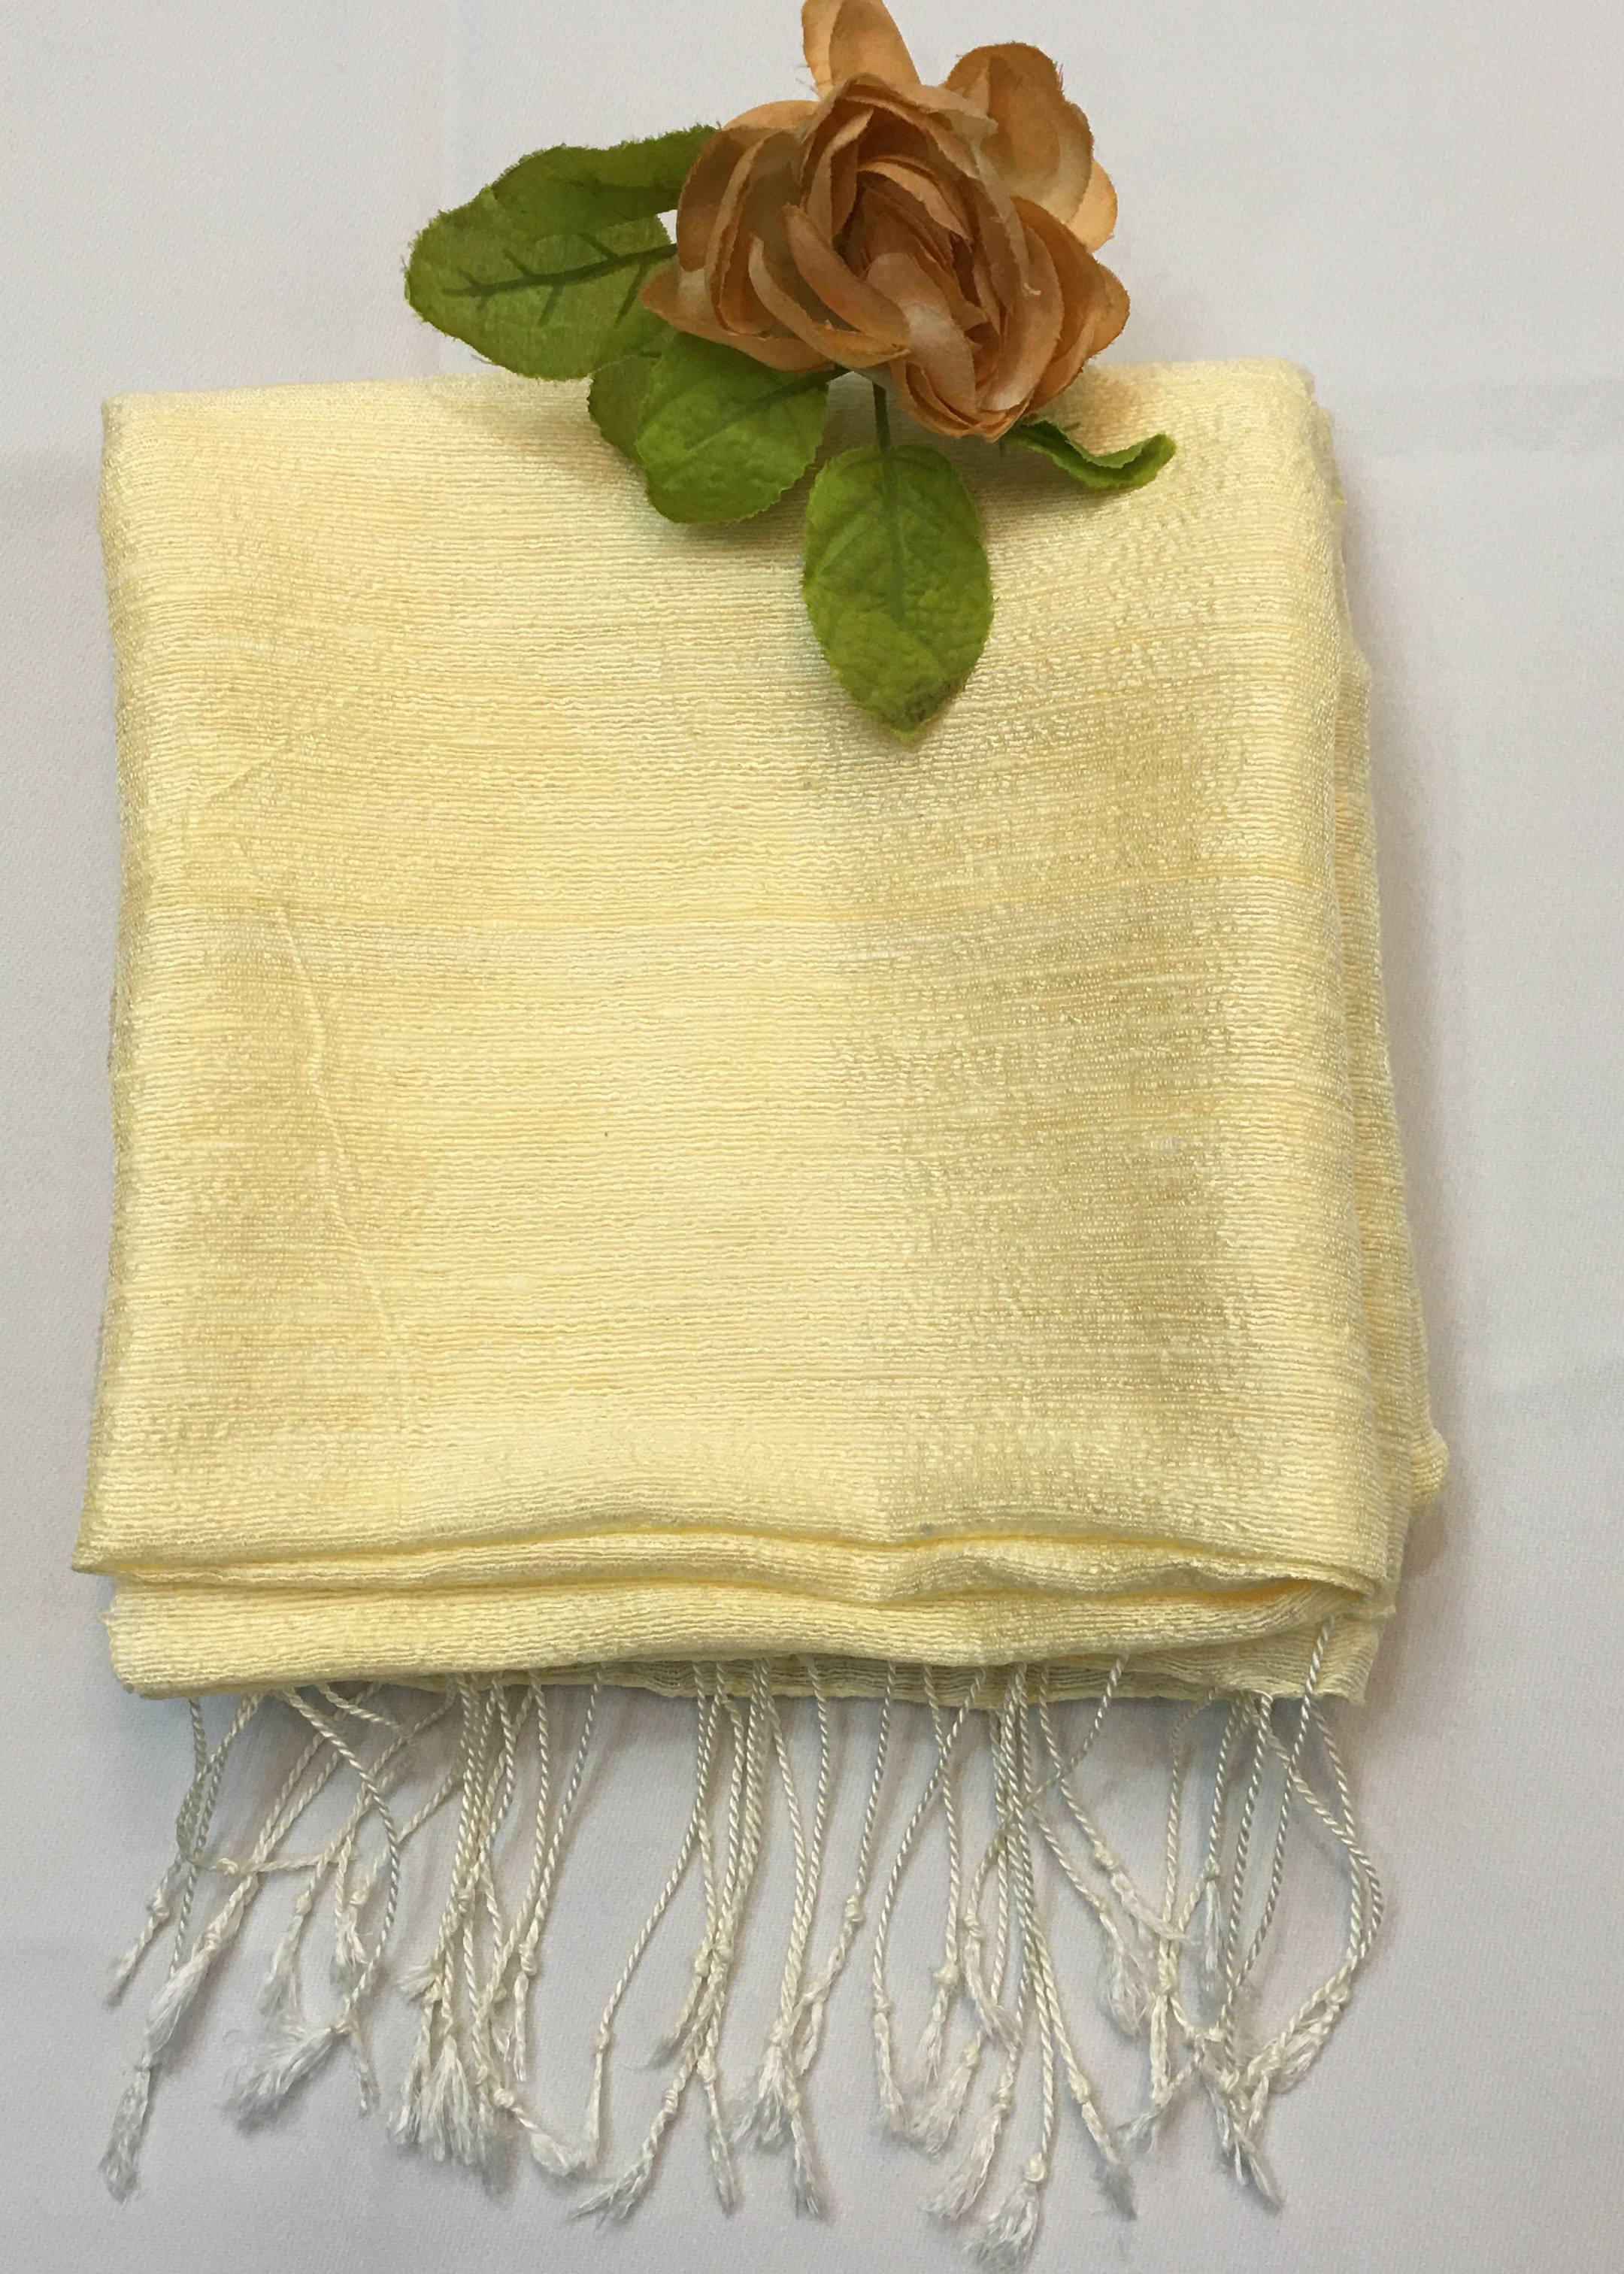 Khăn choàng đũi tơ tằm thiên nhiên, không nhuộm màu, kt 80x180cm, khăn choàng 100% tơ tằm, quà tặng cao cấp, khăn choàng đẹp, khăn tơ tằm màu tự nhiên, hàng thủ công Việt Nam